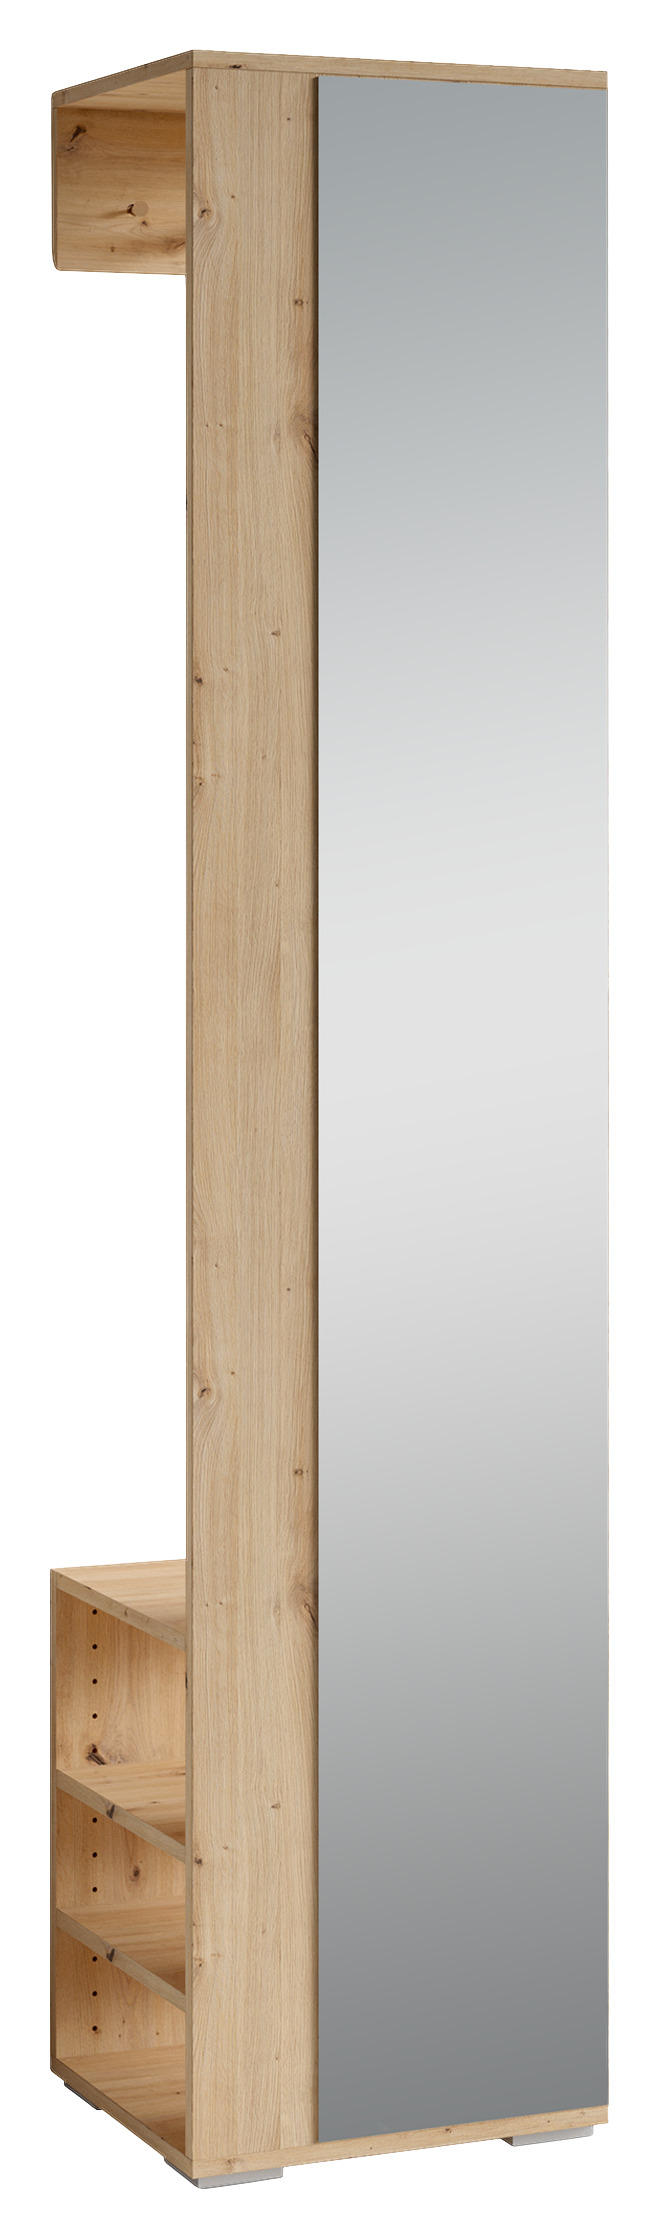 GARDEROBENSCHRANK 40/184/35 cm  - Silberfarben/Eiche Artisan, MODERN, Glas/Kunststoff (40/184/35cm) - MID.YOU